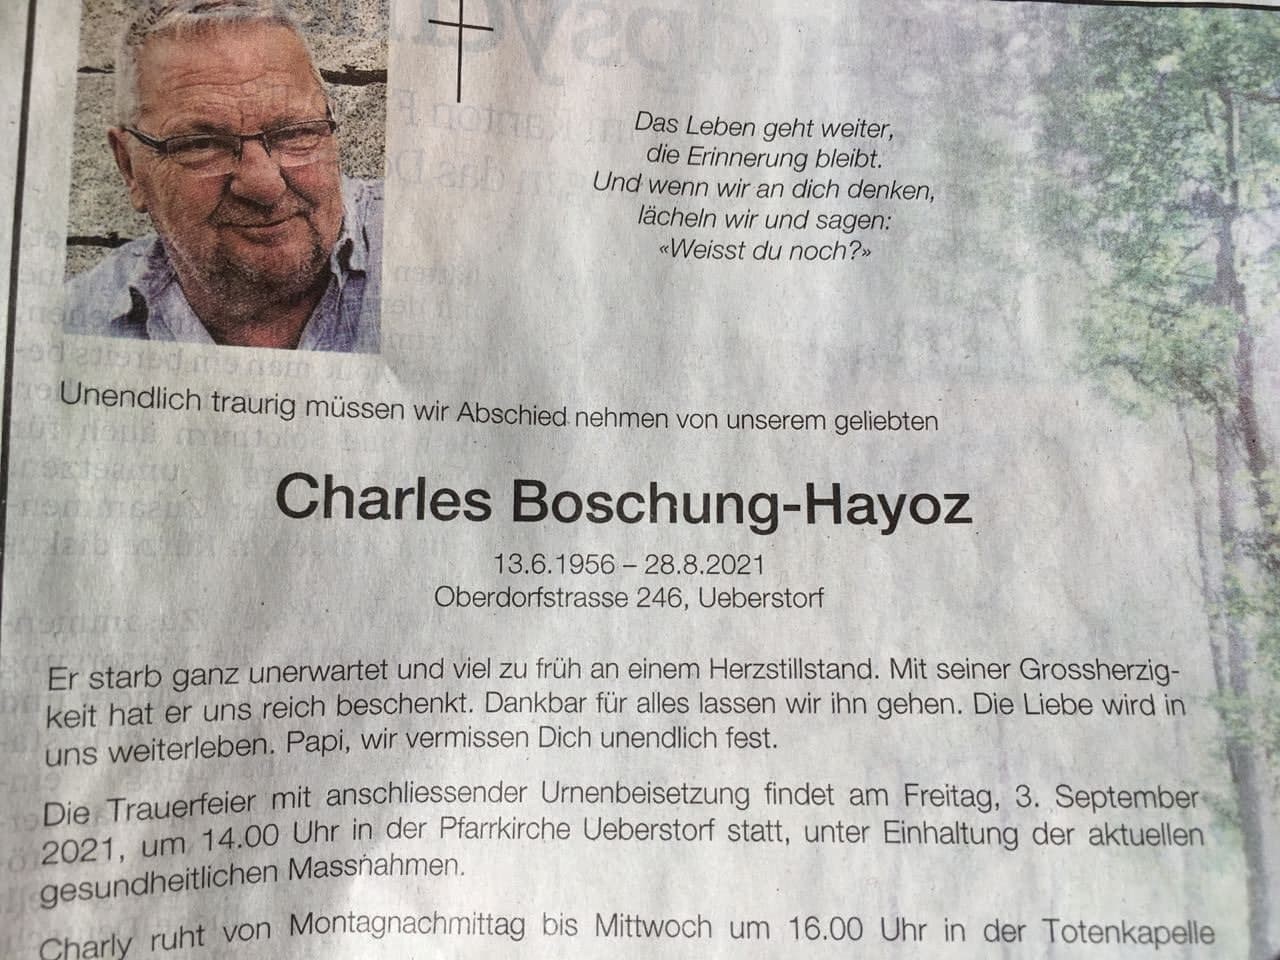 GENimpfmord Schweiz 30.8.2021:
                      Charles Boschung-Hayoz "ganz unerwartet"
                      gestorben